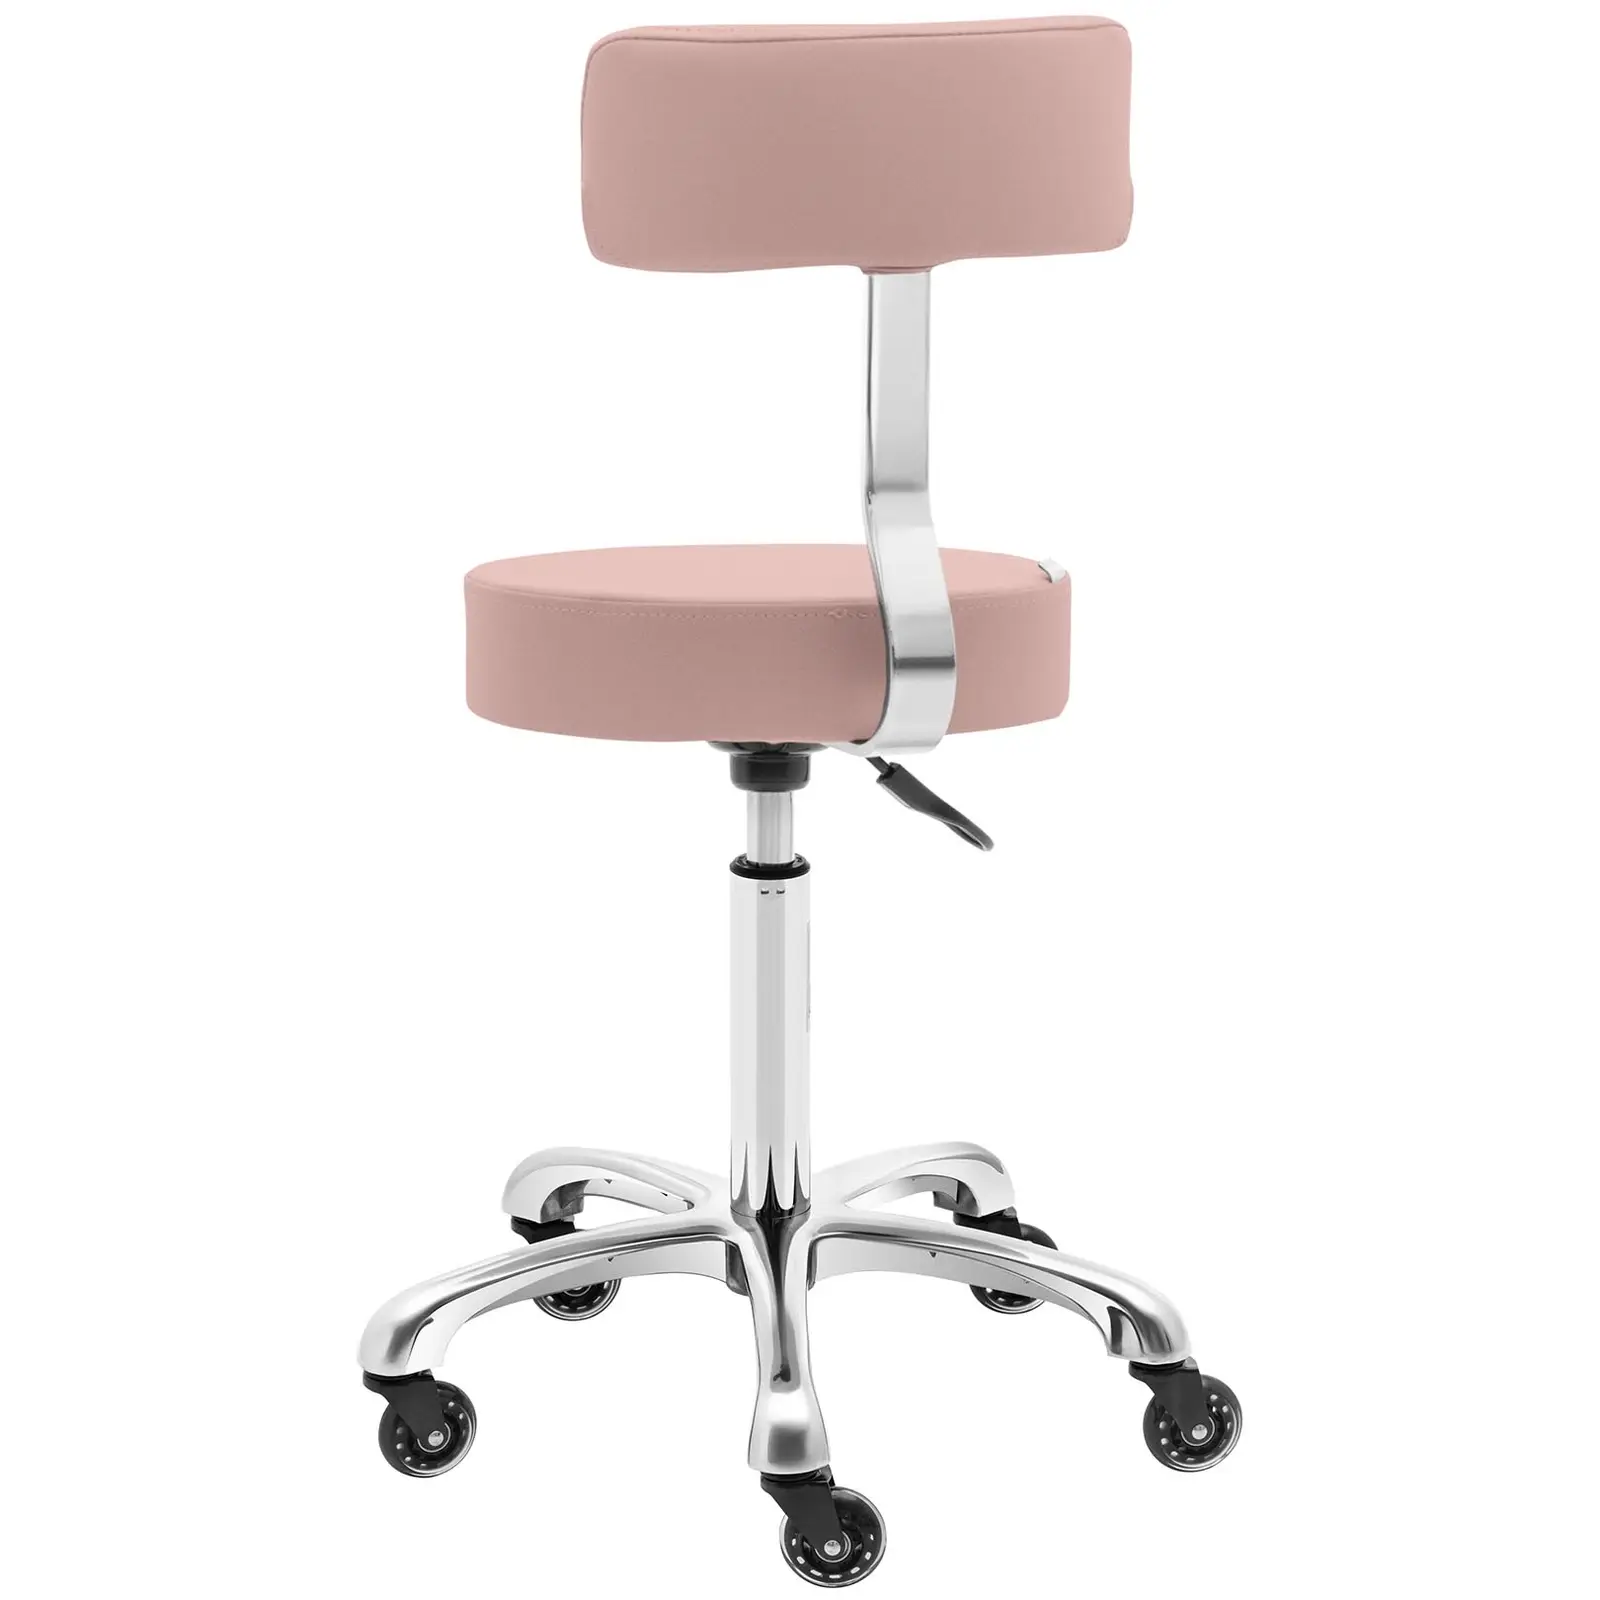 Cadeira para salão de beleza - mm - cor-de-rosa